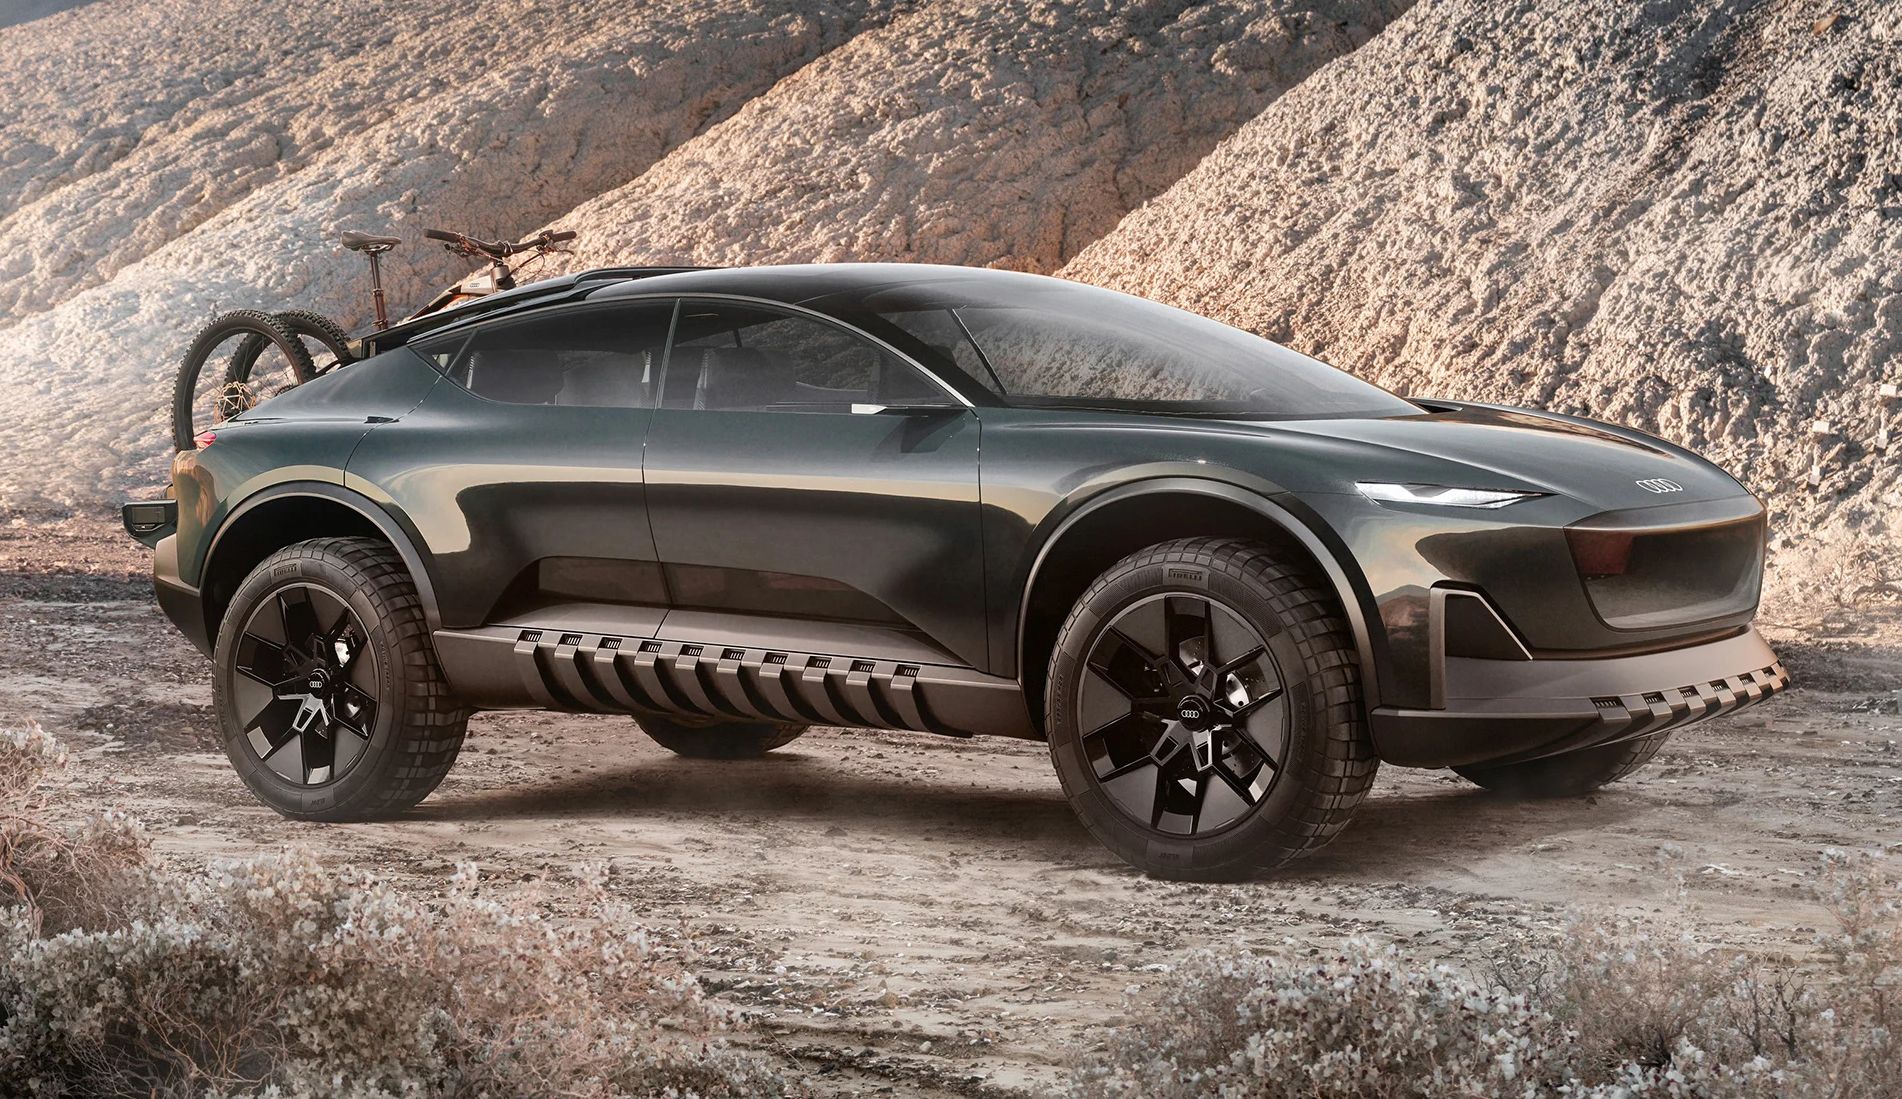 Ce nouveau concept Audi semble dessiné pour avoir la classe... au milieu d'une apocalypse zombie